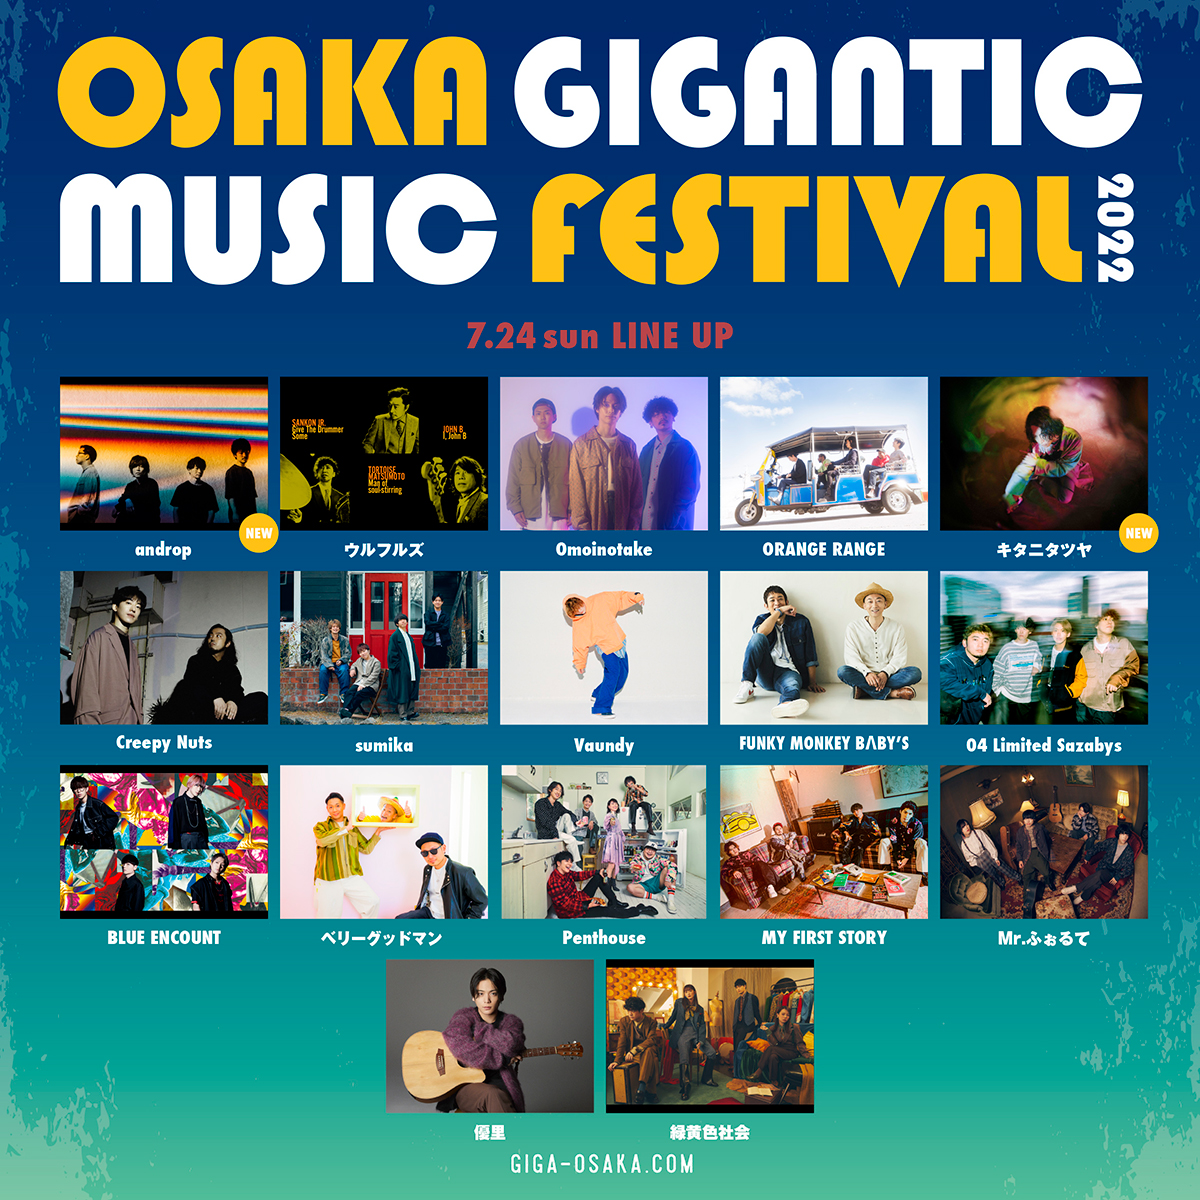 OSAKA GIGANTIC MUSIC FESTIVAL 2022